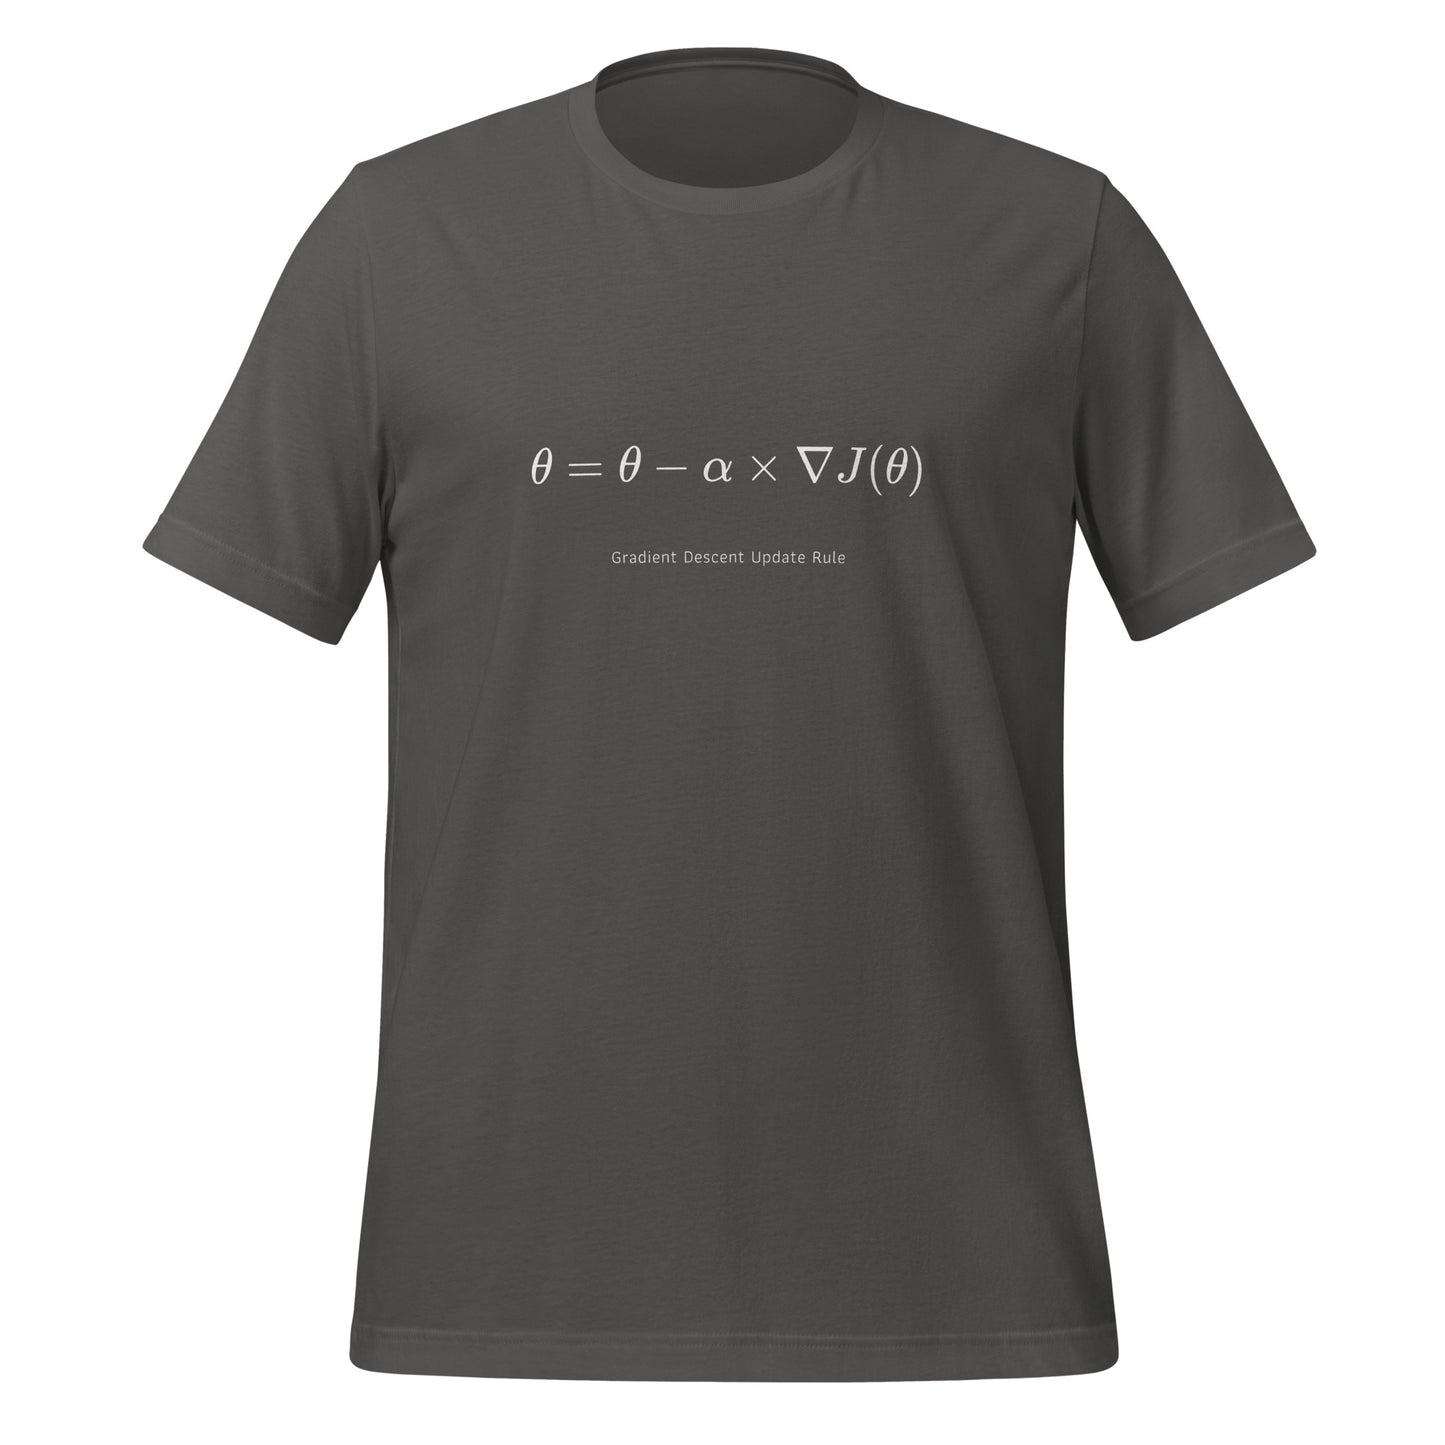 Gradient Descent Update Rule T - Shirt (unisex) - Asphalt - AI Store